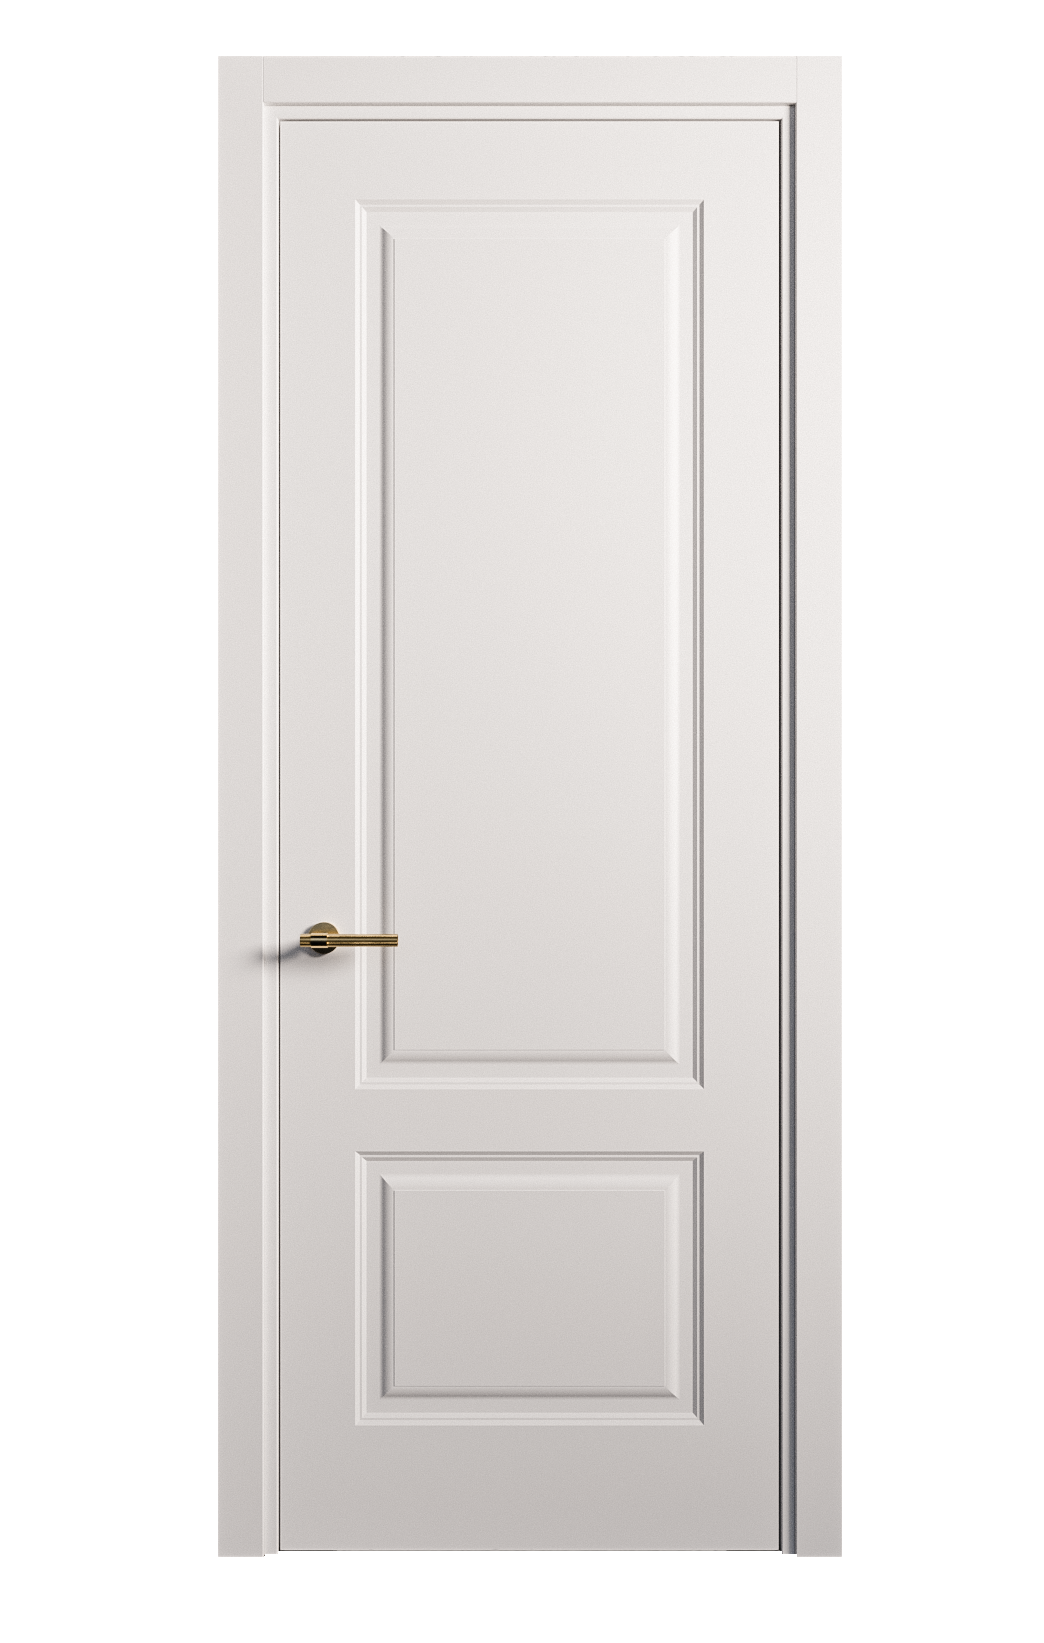 Межкомнатная дверь Вита-1 глухая эмаль ral 9003 26278